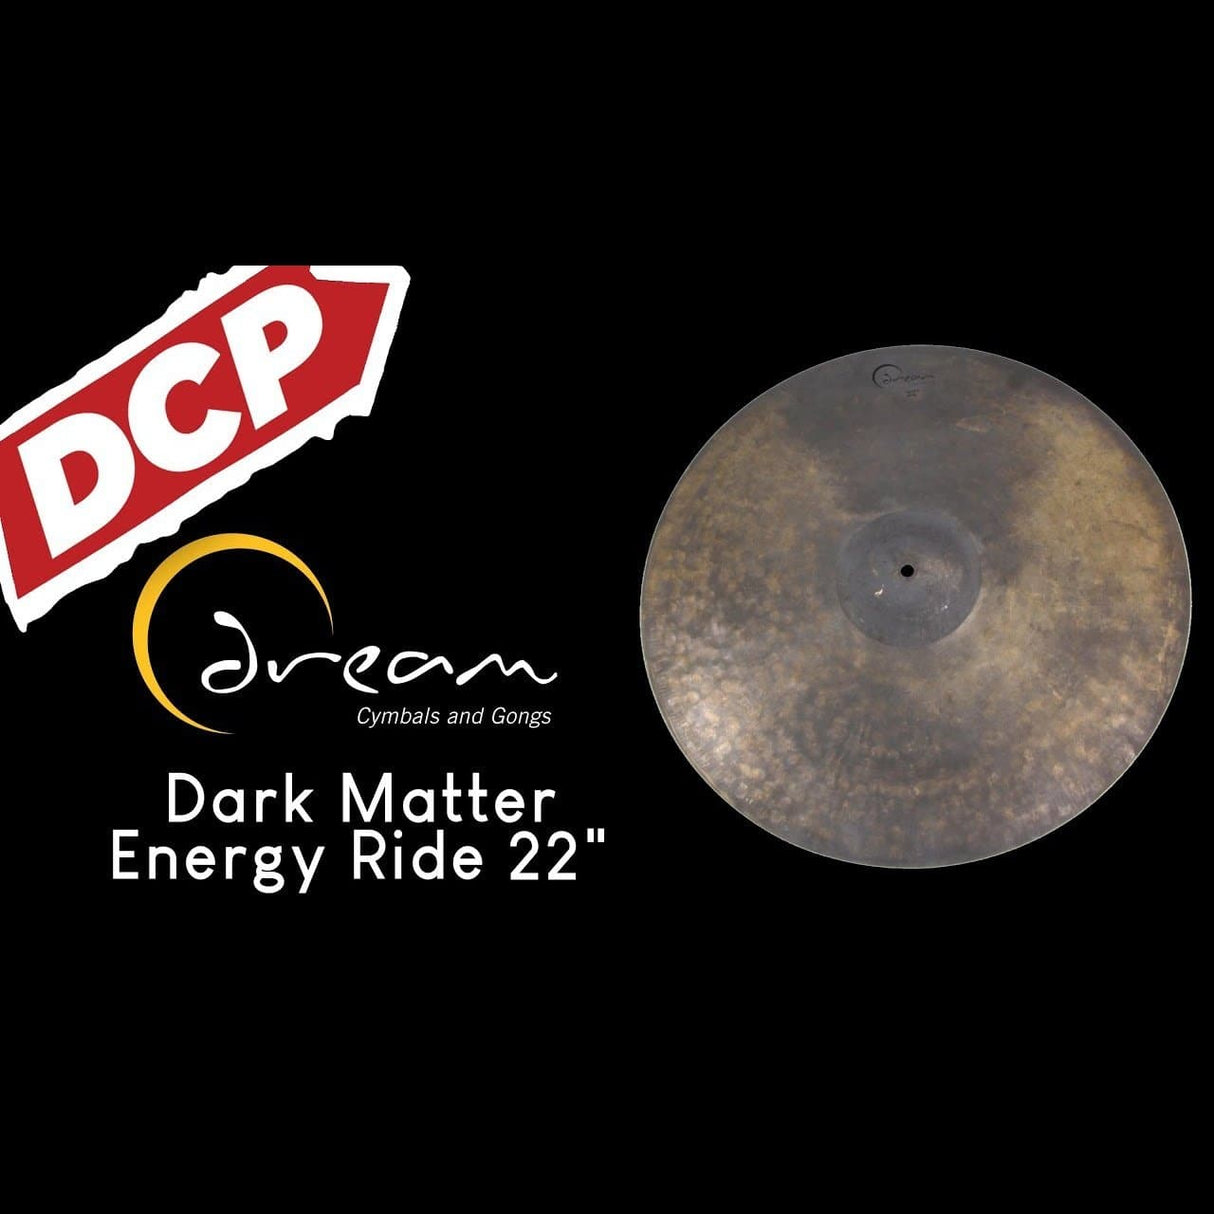 Dream Dark Matter Energy Ride Cymbal 22" 3020 grams